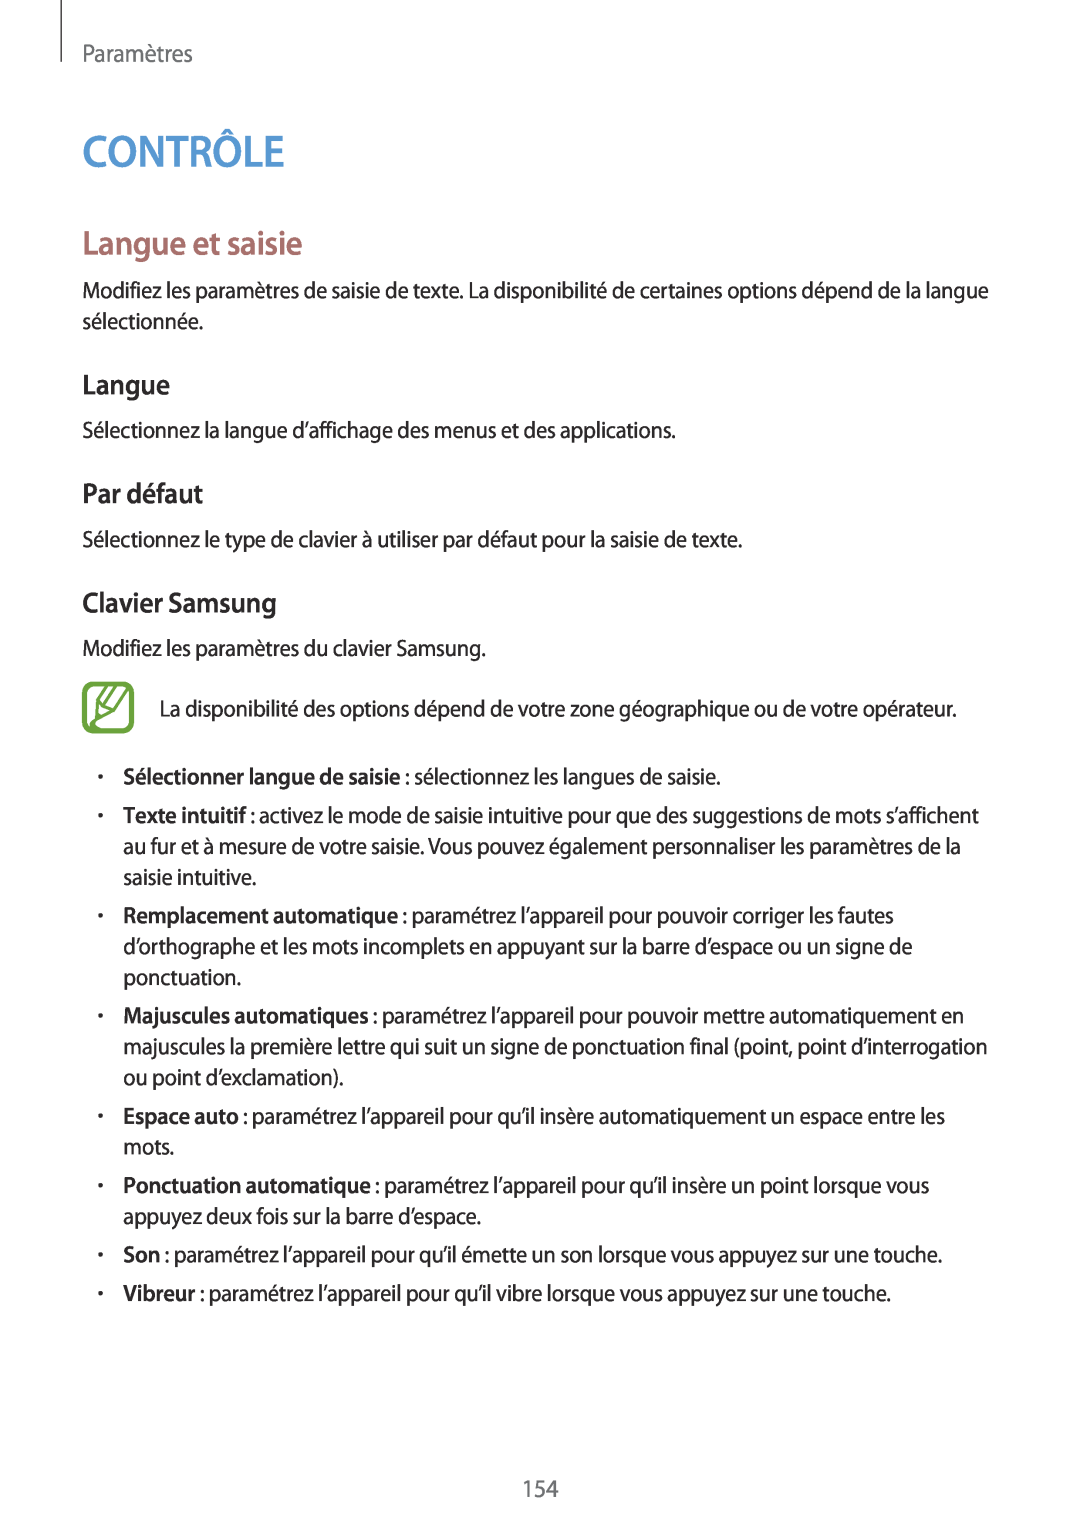 Samsung SM-P9050ZWAXEF, SM-P9050ZKAXEF manual Contrôle, Langue et saisie, Par défaut, Clavier Samsung, Paramètres 